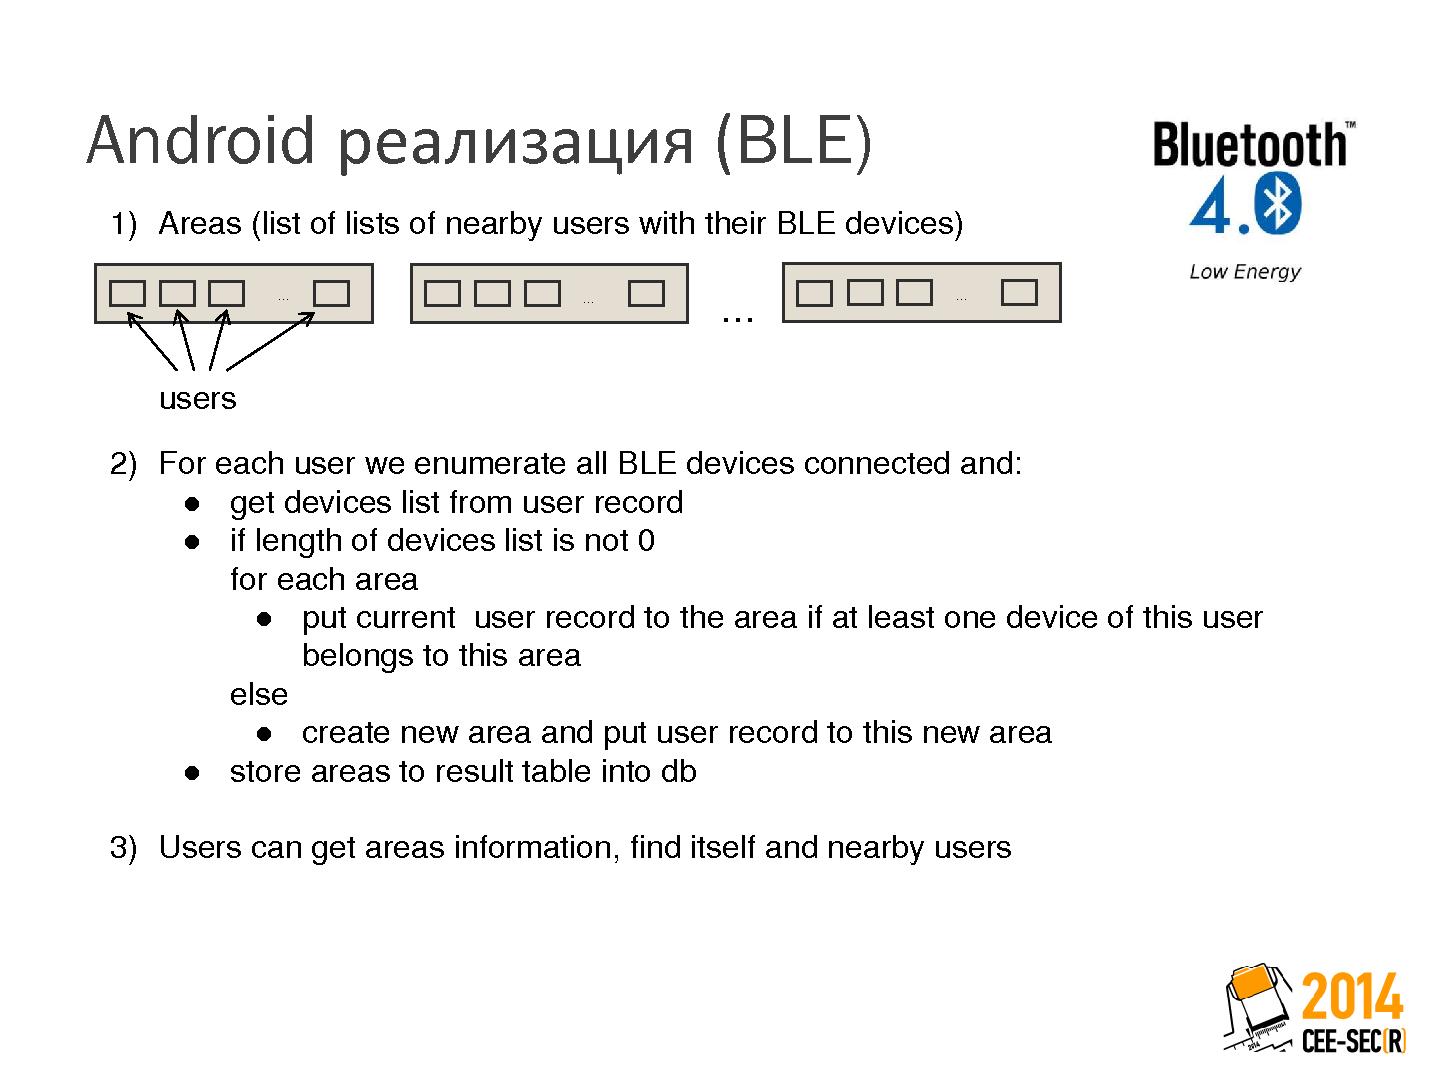 Файл:Использование протоколов Bluetooth Low Energy и Wi-Fi для построения временных социальных сетей (Максим Лейкин, SECR-2014).pdf